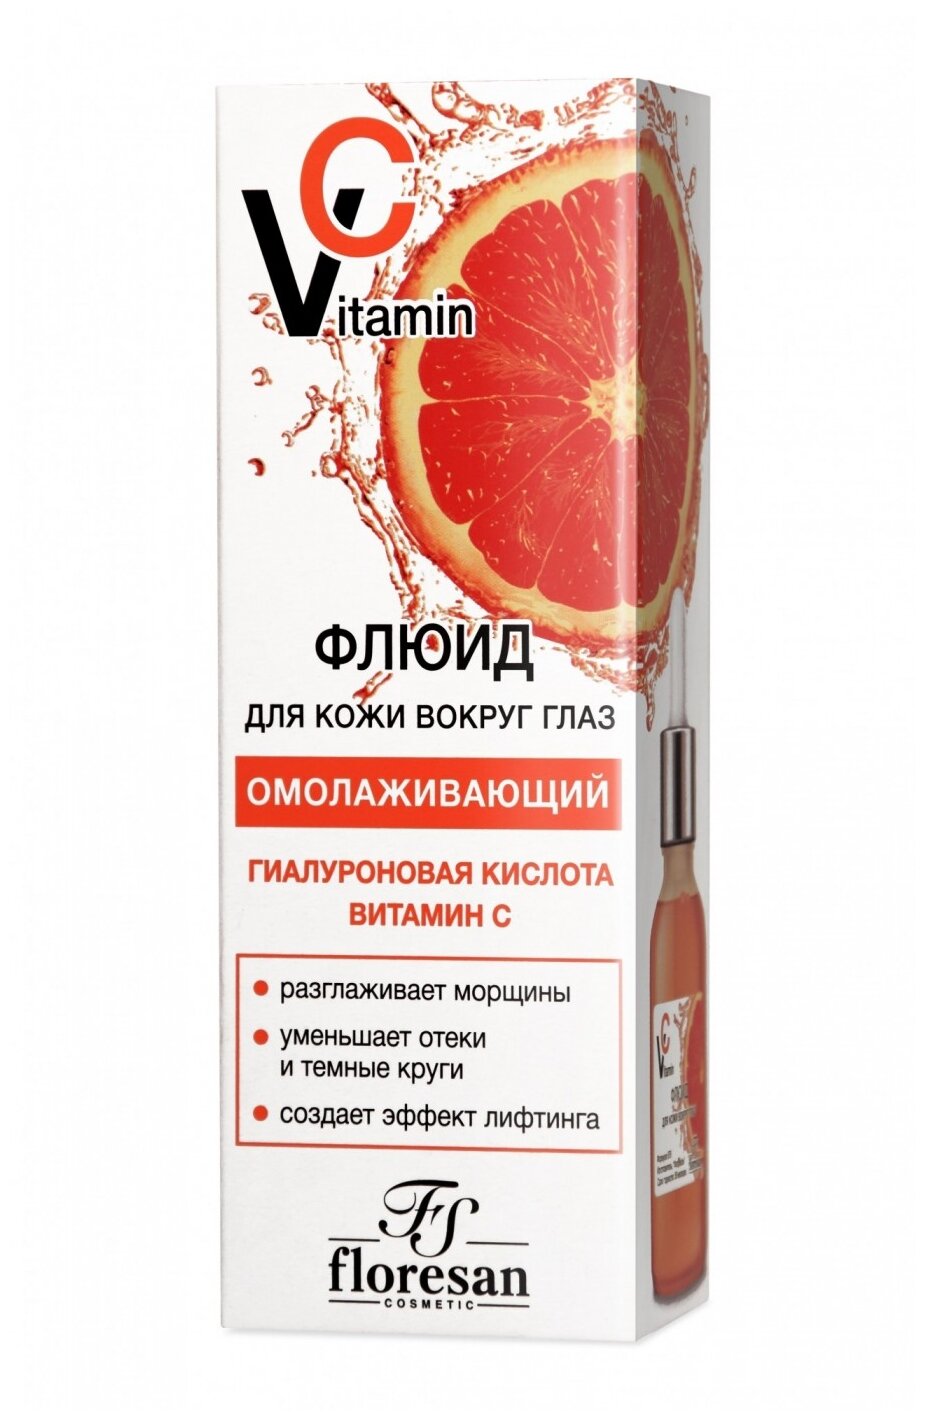 Floresan Флюид для кожи вокруг глаз Vitamin C 30 мл.